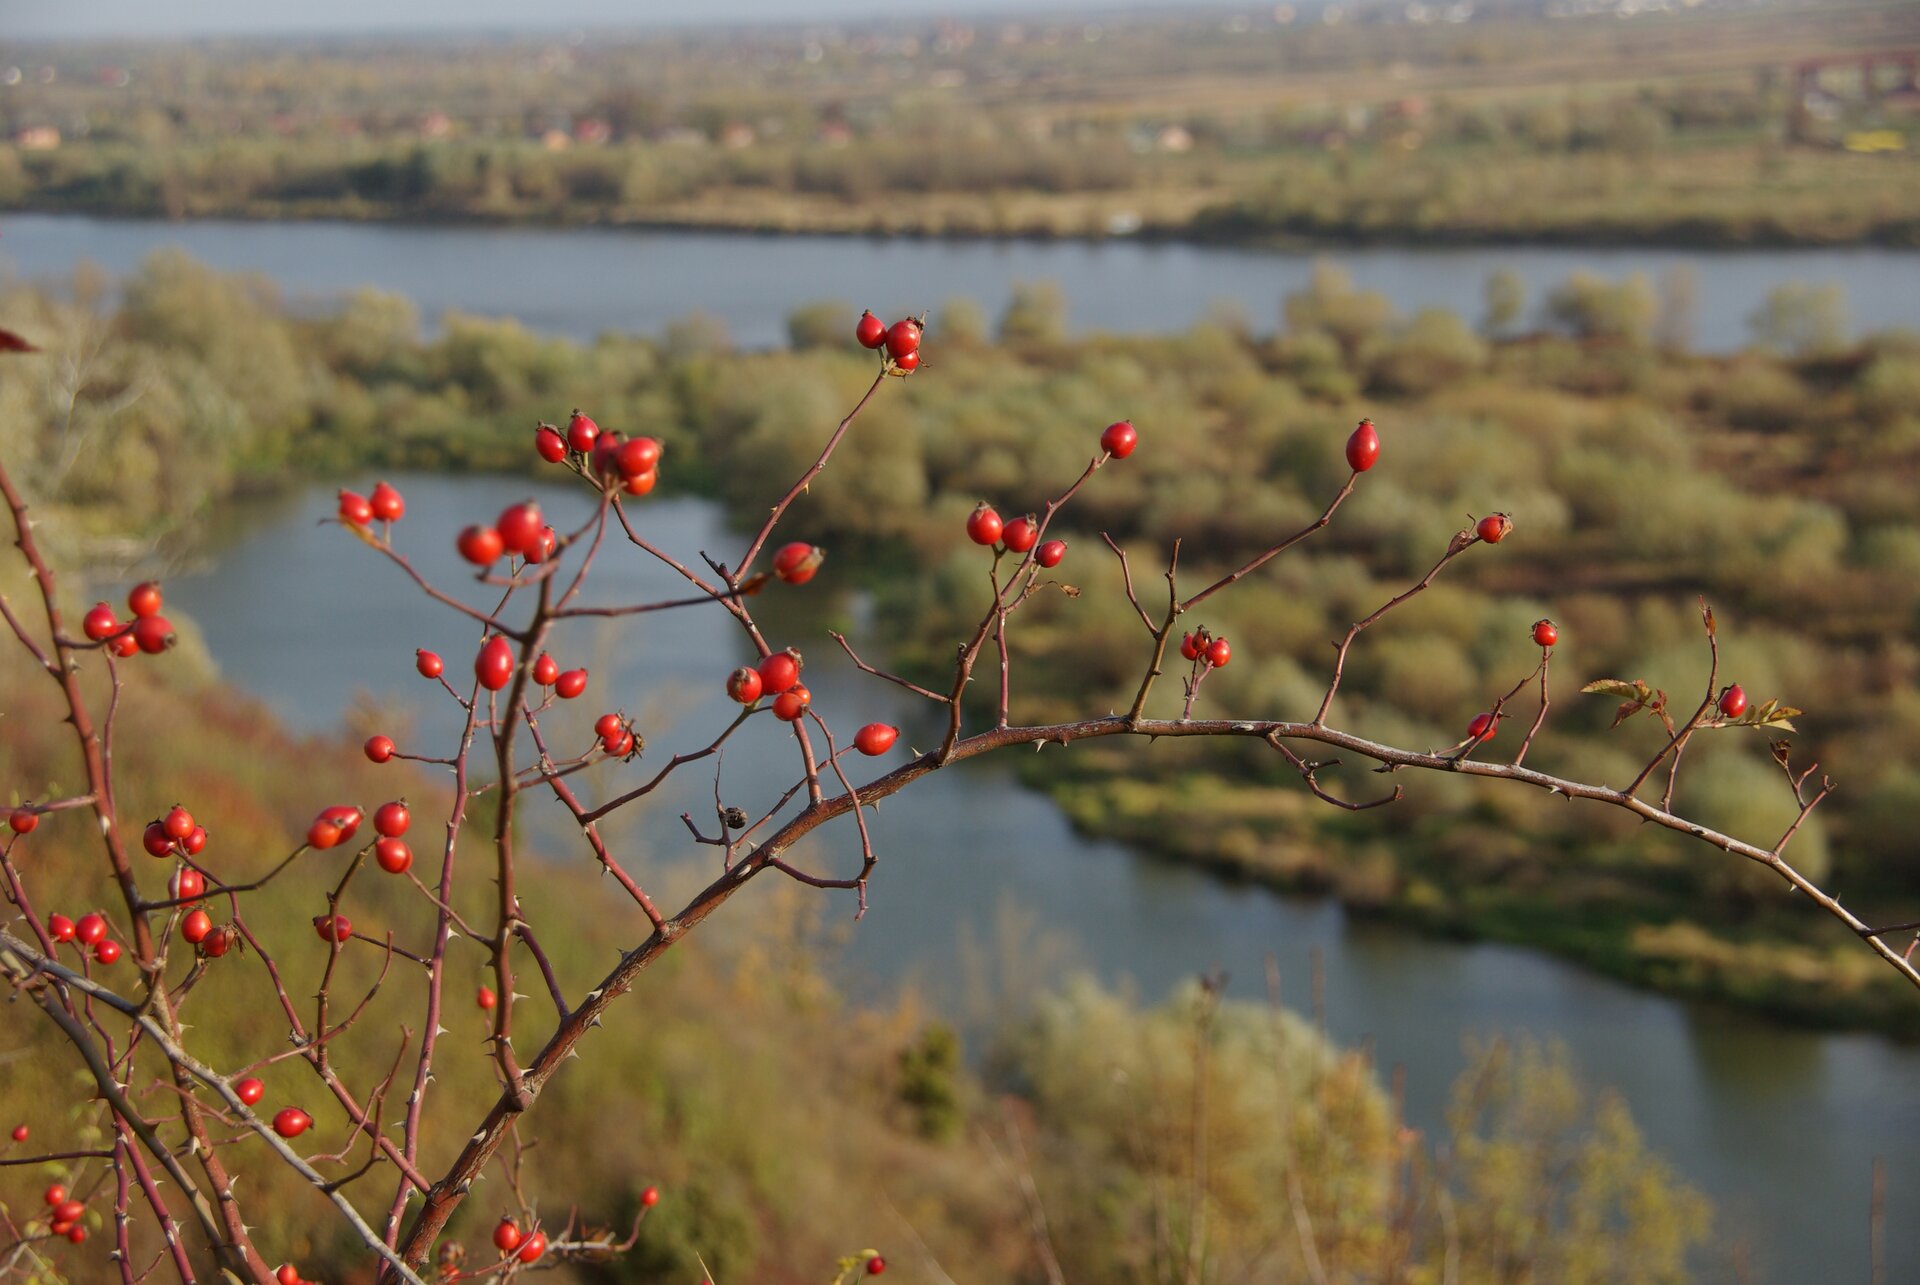 Ilustracja przedstawia widok Gór Pieprzowych. Jest to miejsce występowania największej luczby gatunków dzikich róż w Polsce. Na pierwszym planie widzimy gałązki z czerwonymi owocami dzikiej róży. W tle widoczna jest słoneczna panorama, na której można dostrzec drzewa oraz rzekę.